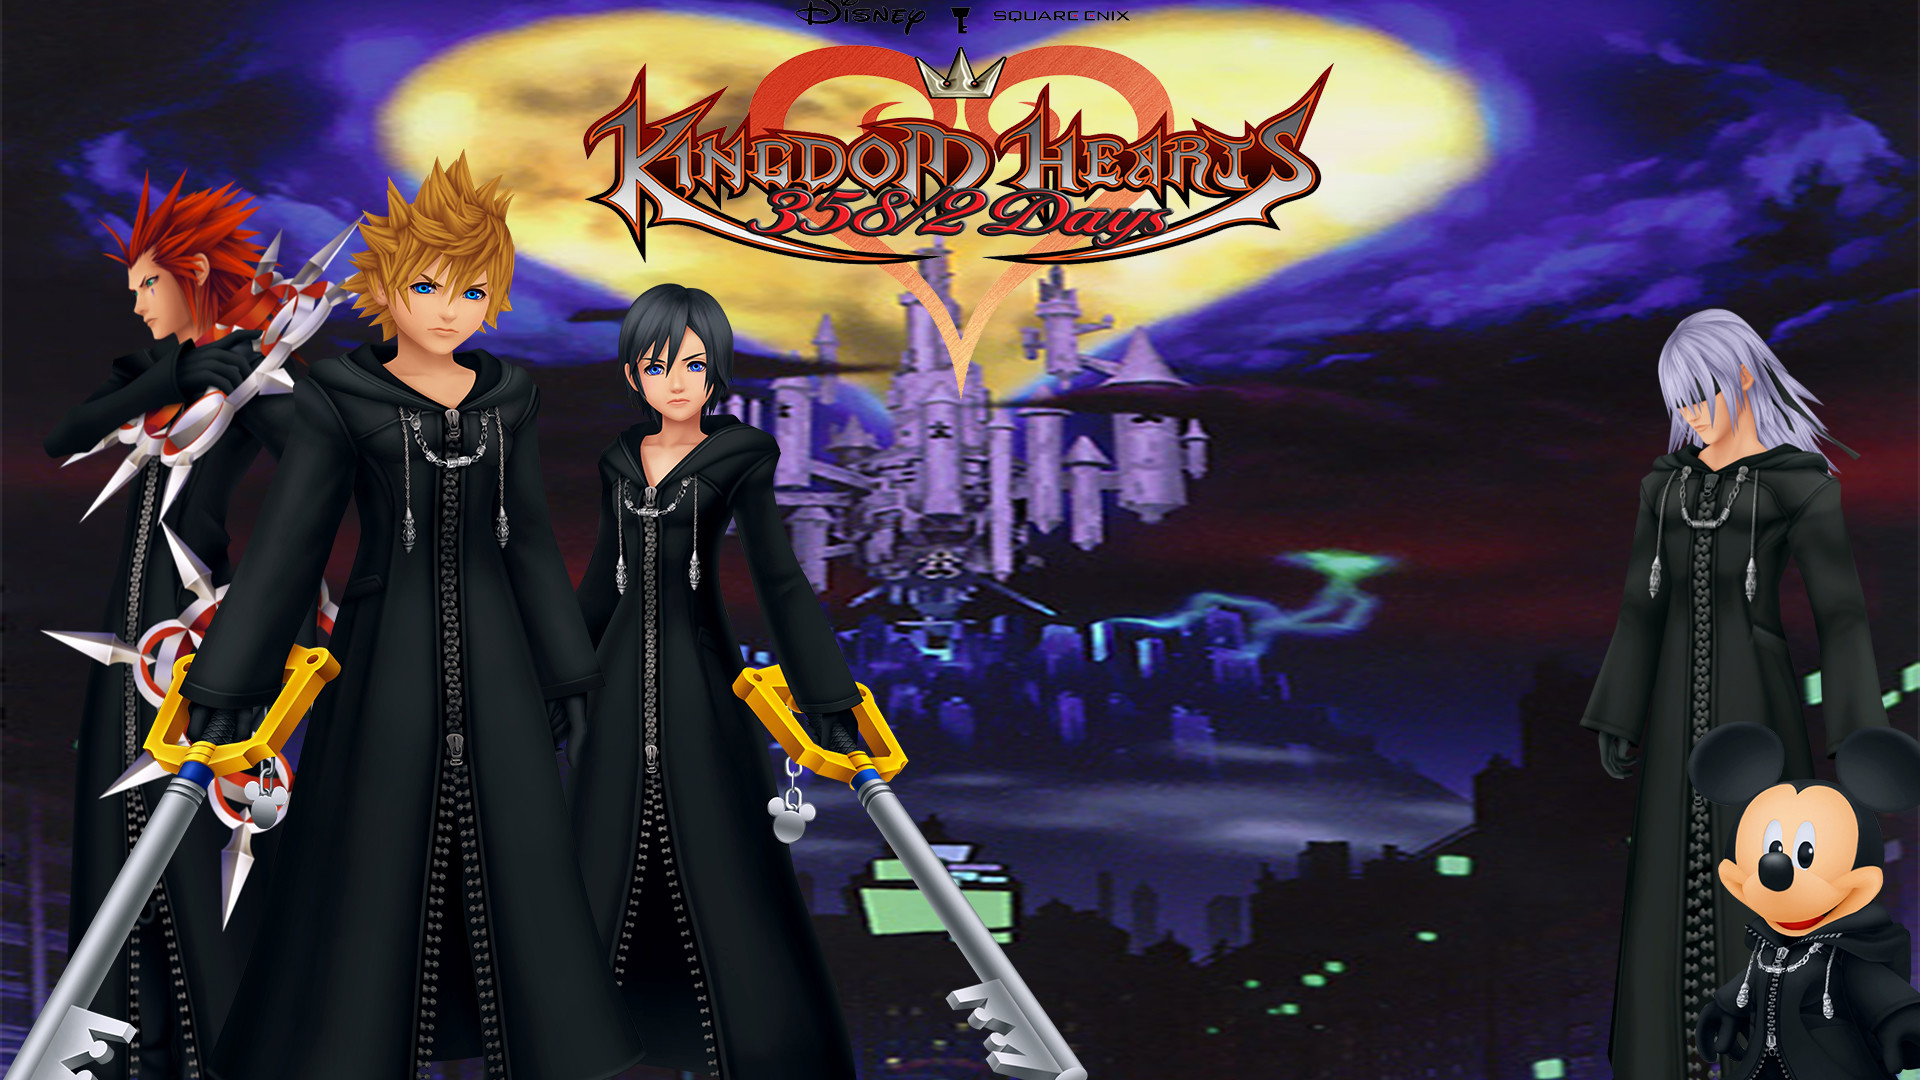 Kingdom Hearts: 358/2 Days Wallpaper by The-Dark-Mamba-995.